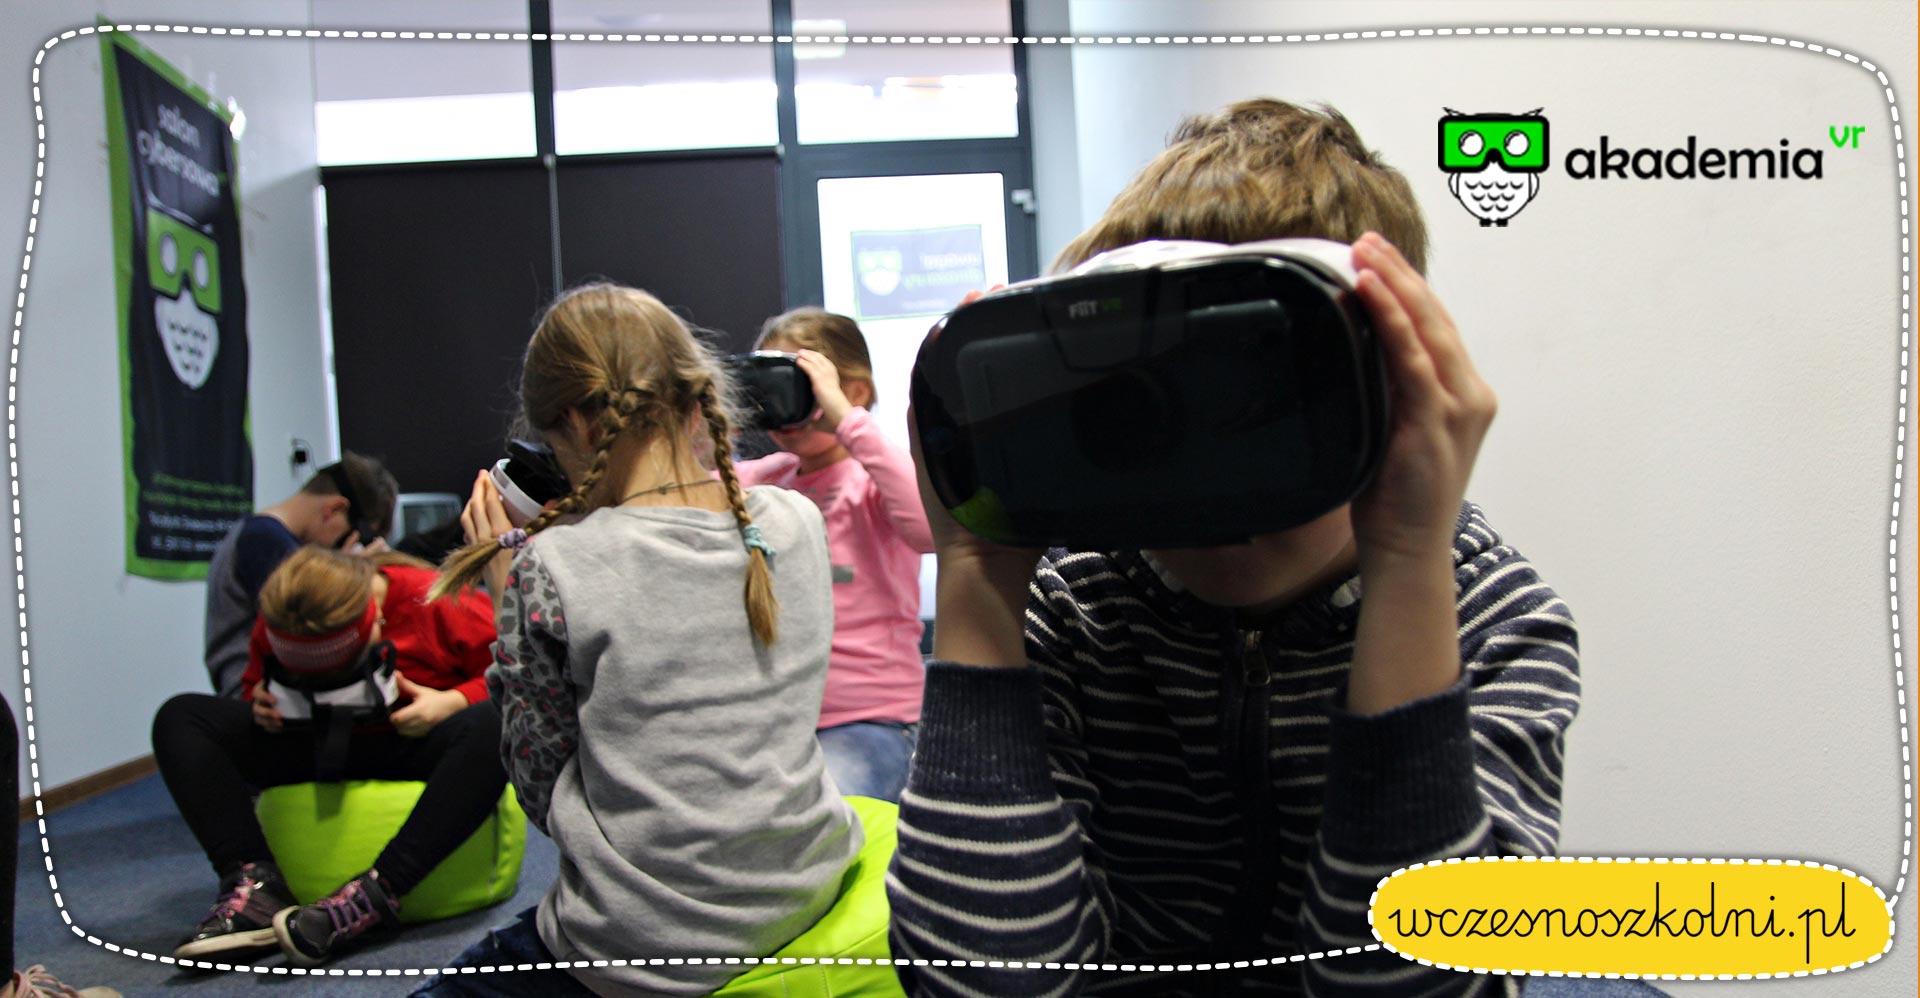 Akademia VR - wirtualna rzeczywistość w edukacji wczesnoszkolnej